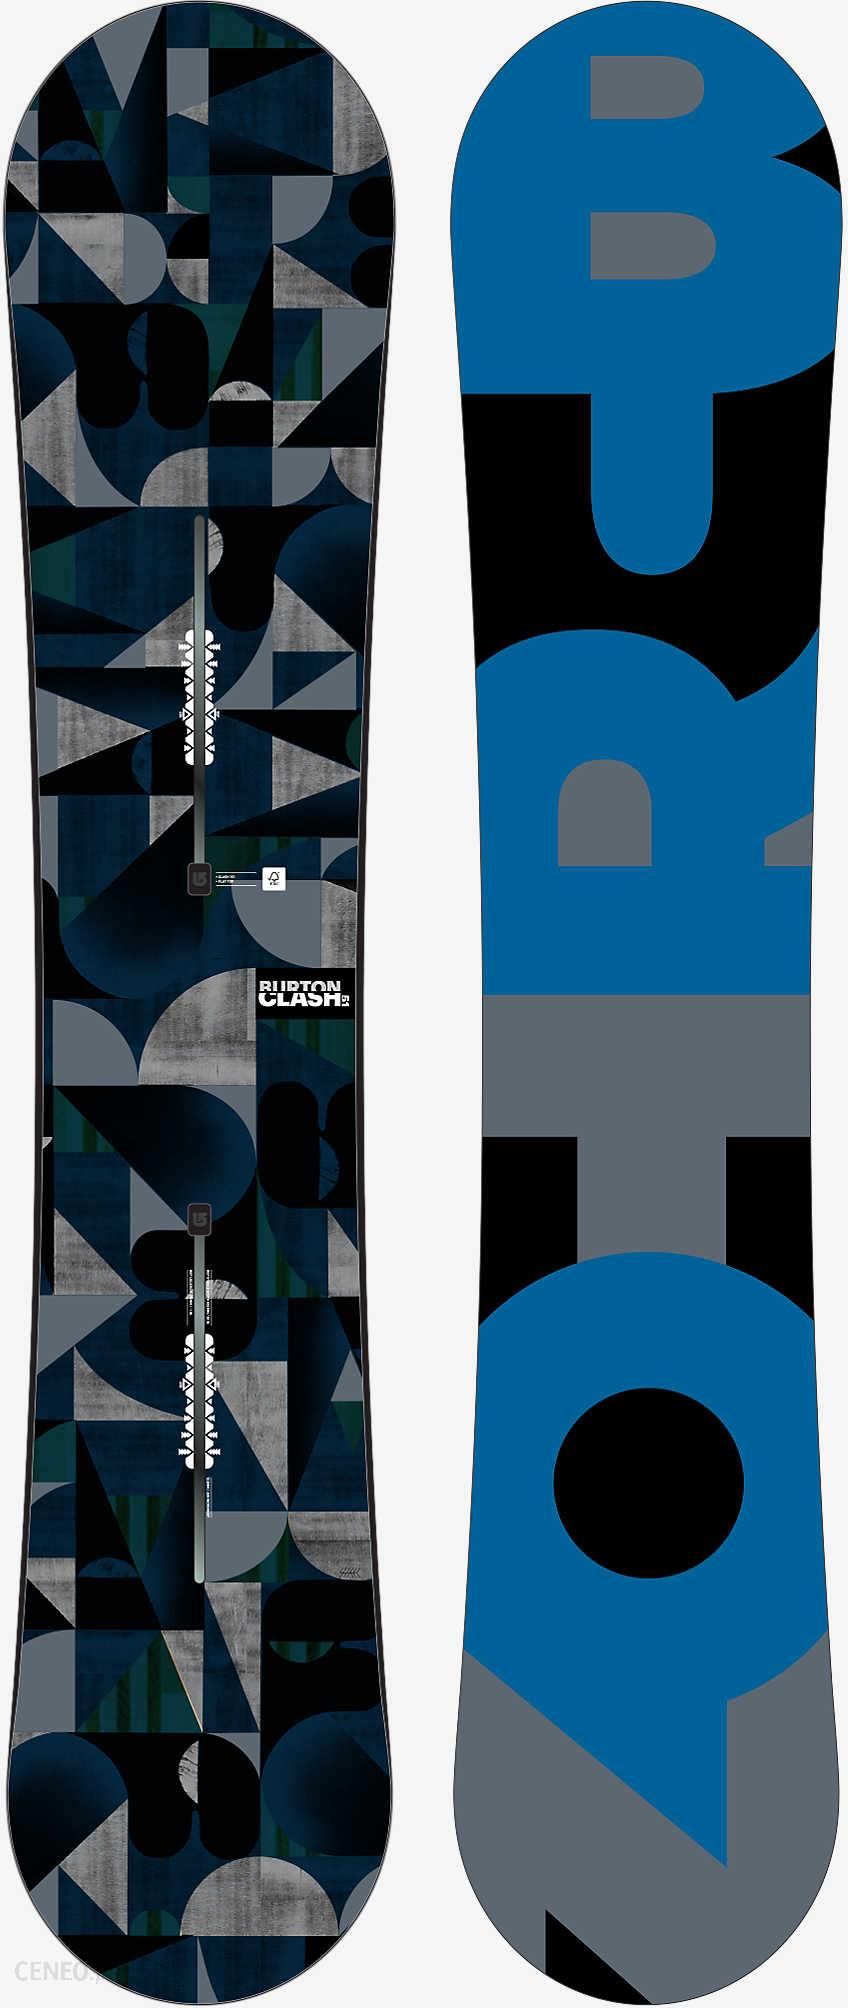 Deska snowboardowa Burton Clash 16/17 - Ceny i opinie - Ceneo.pl